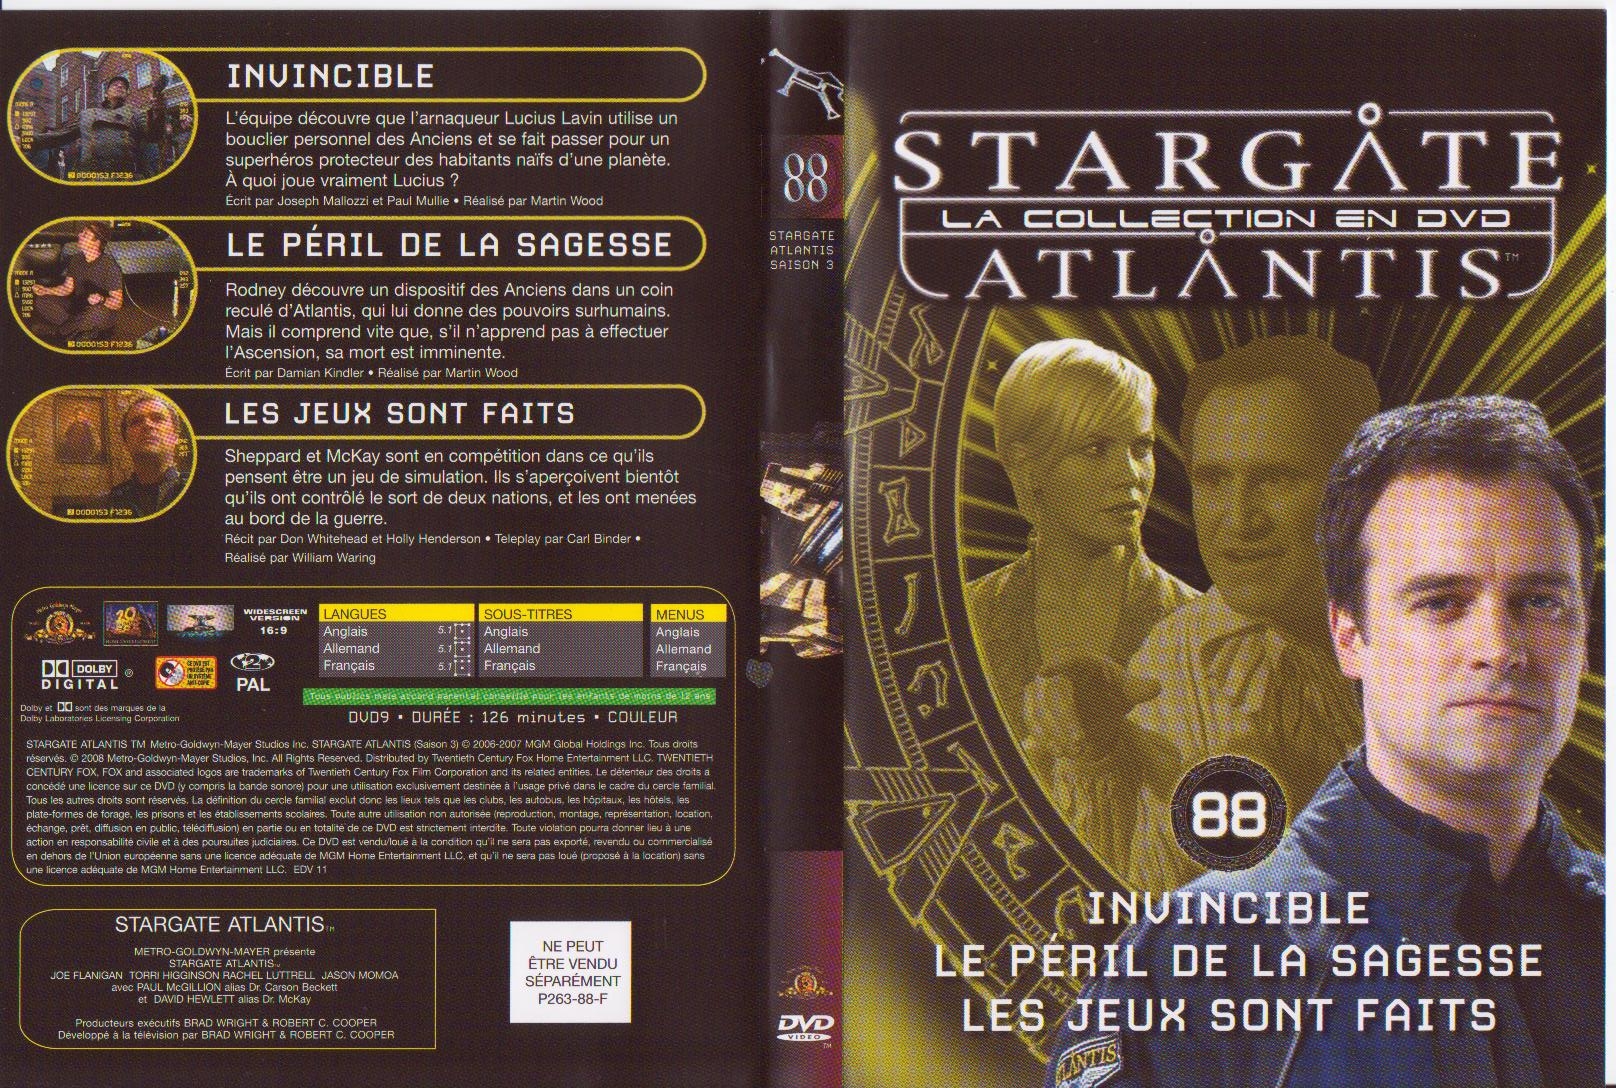 Jaquette DVD Stargate atlantis saison 3 vol 88